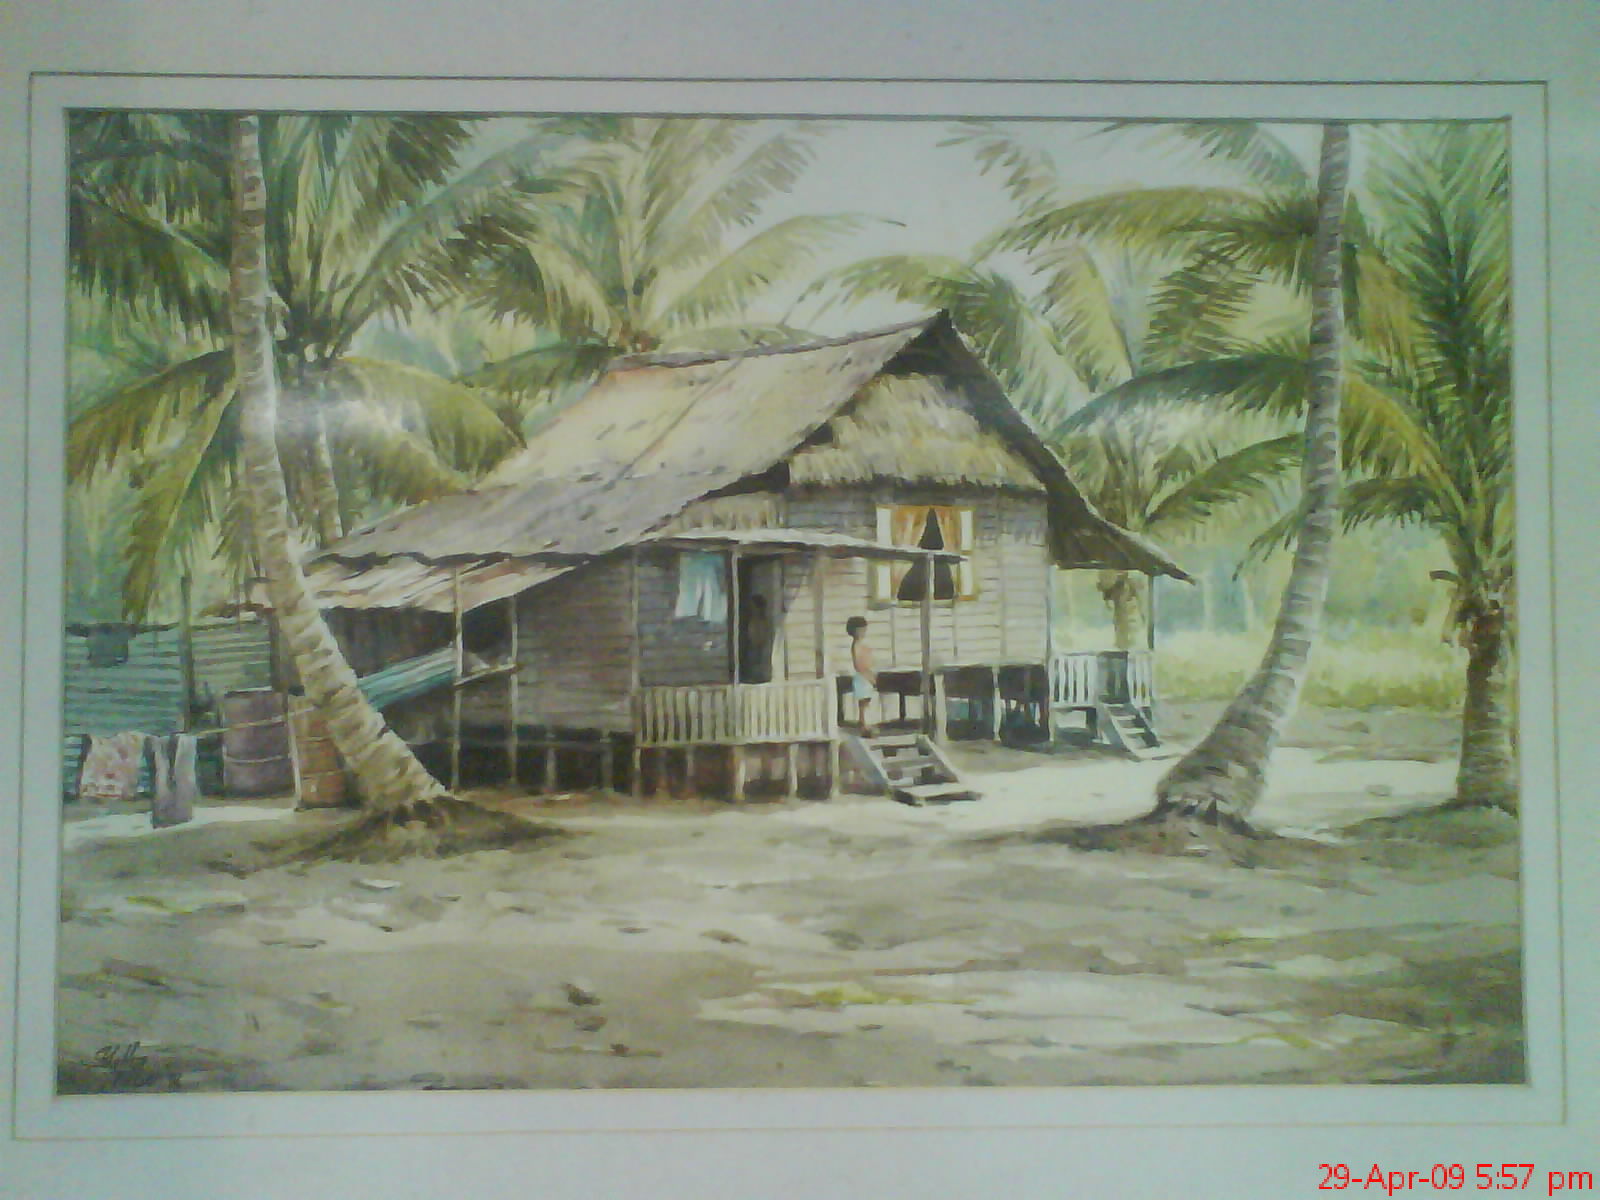  atau lihat koleksi gambar foto rumah tradisional Melayu di sini